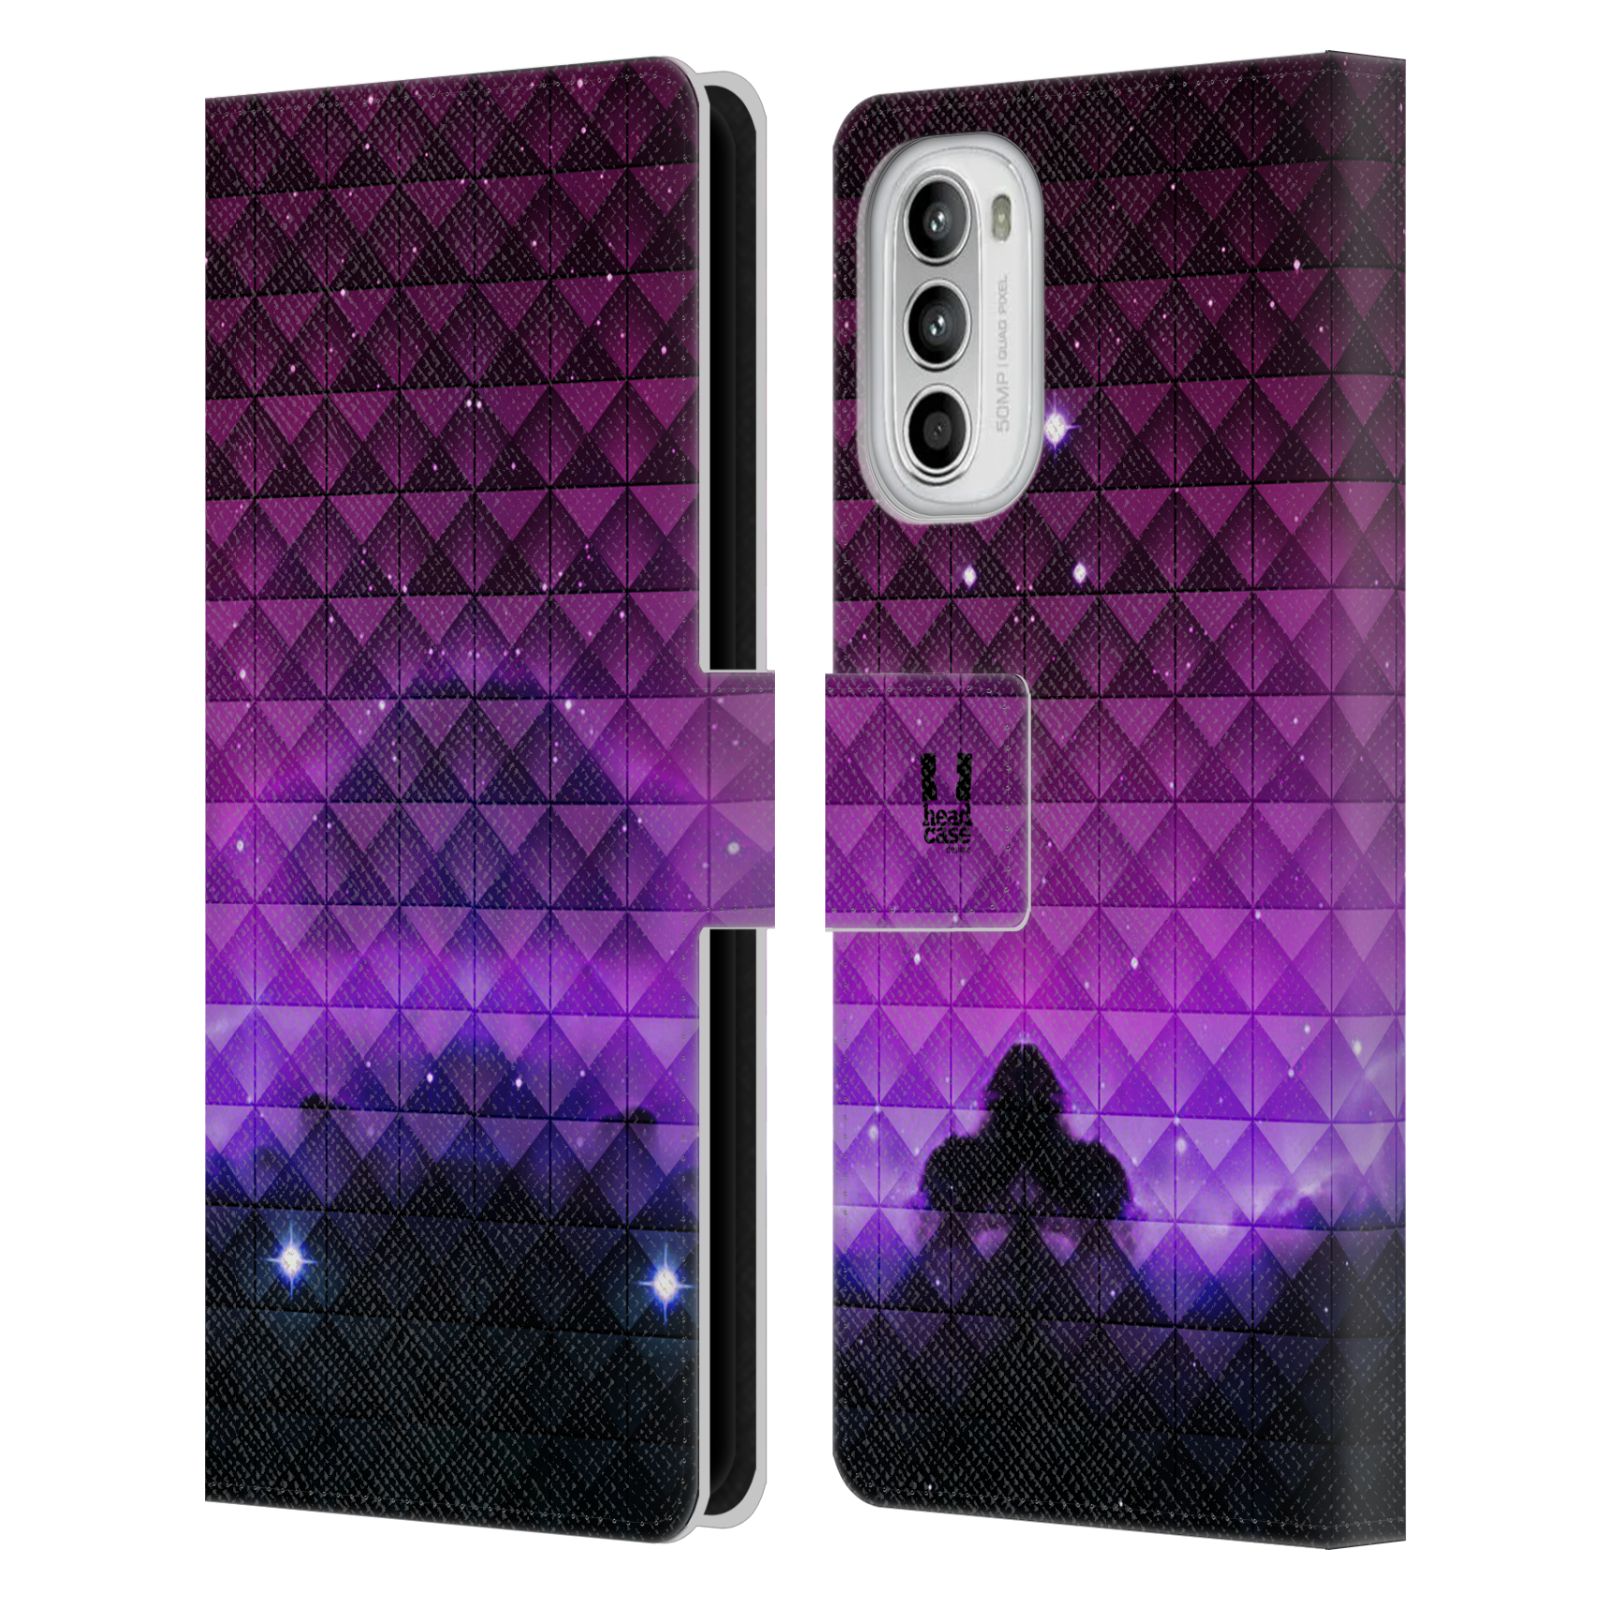 Pouzdro HEAD CASE na mobil Motorola Moto G52 barevná vesmírná mlhovina fialová a černá